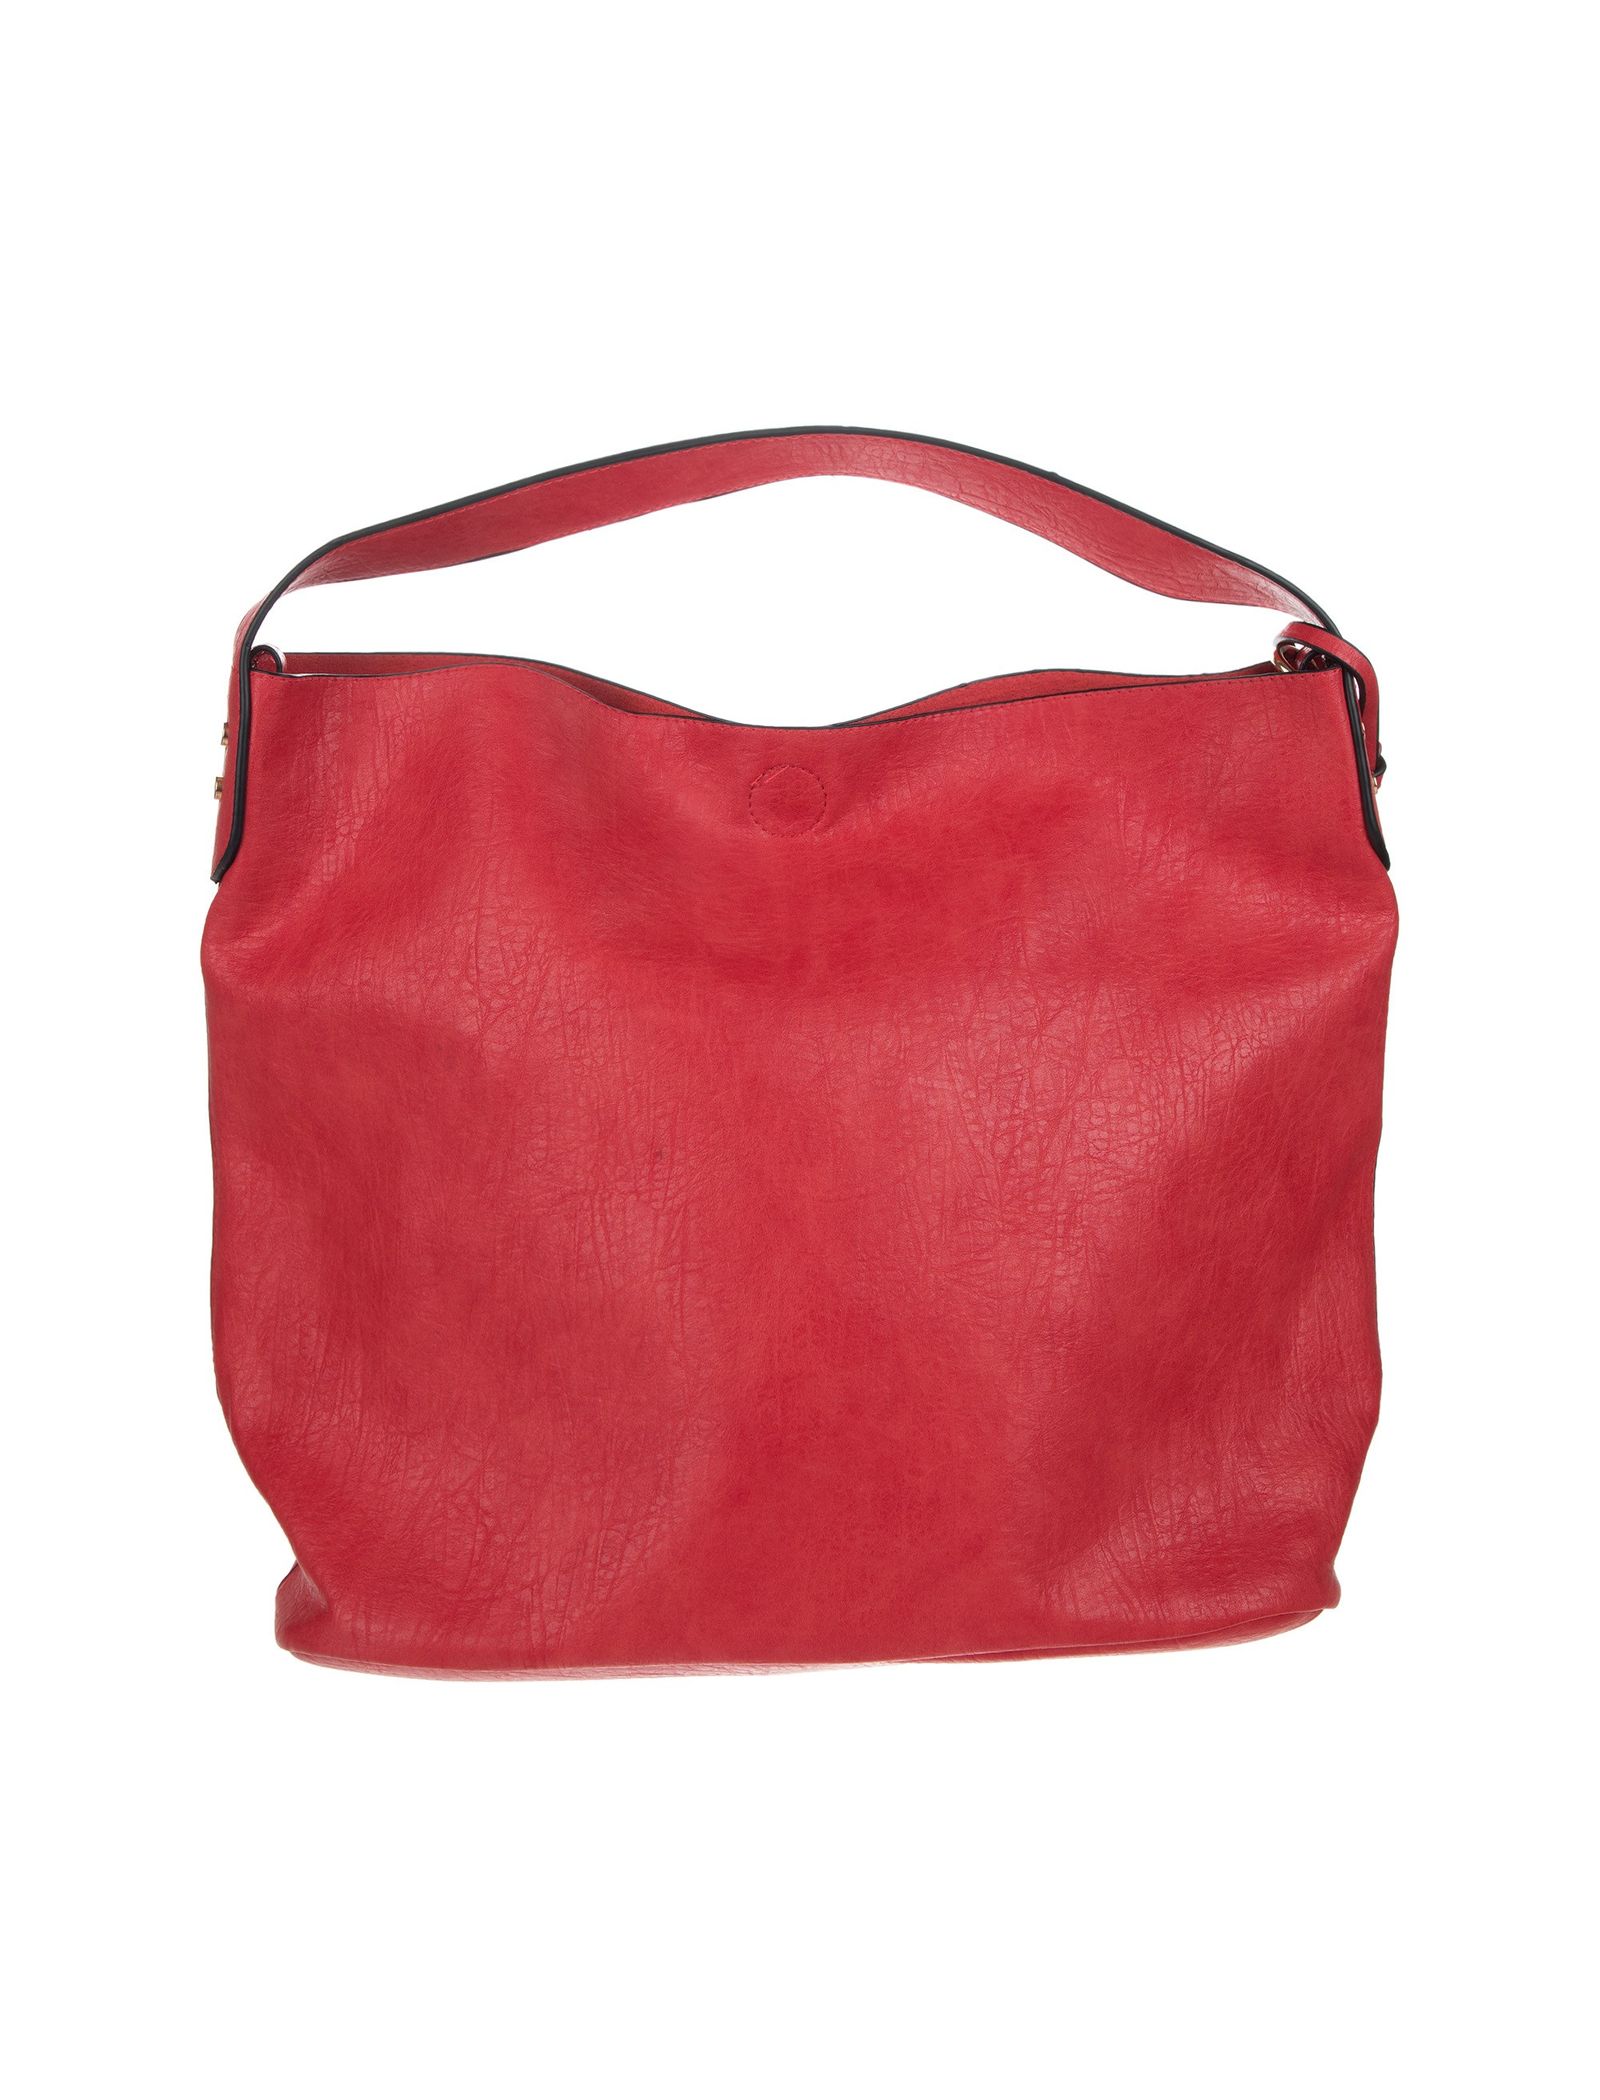 کیف دستی روزمره زنانه - دادلین تک سایز - قرمز - 2